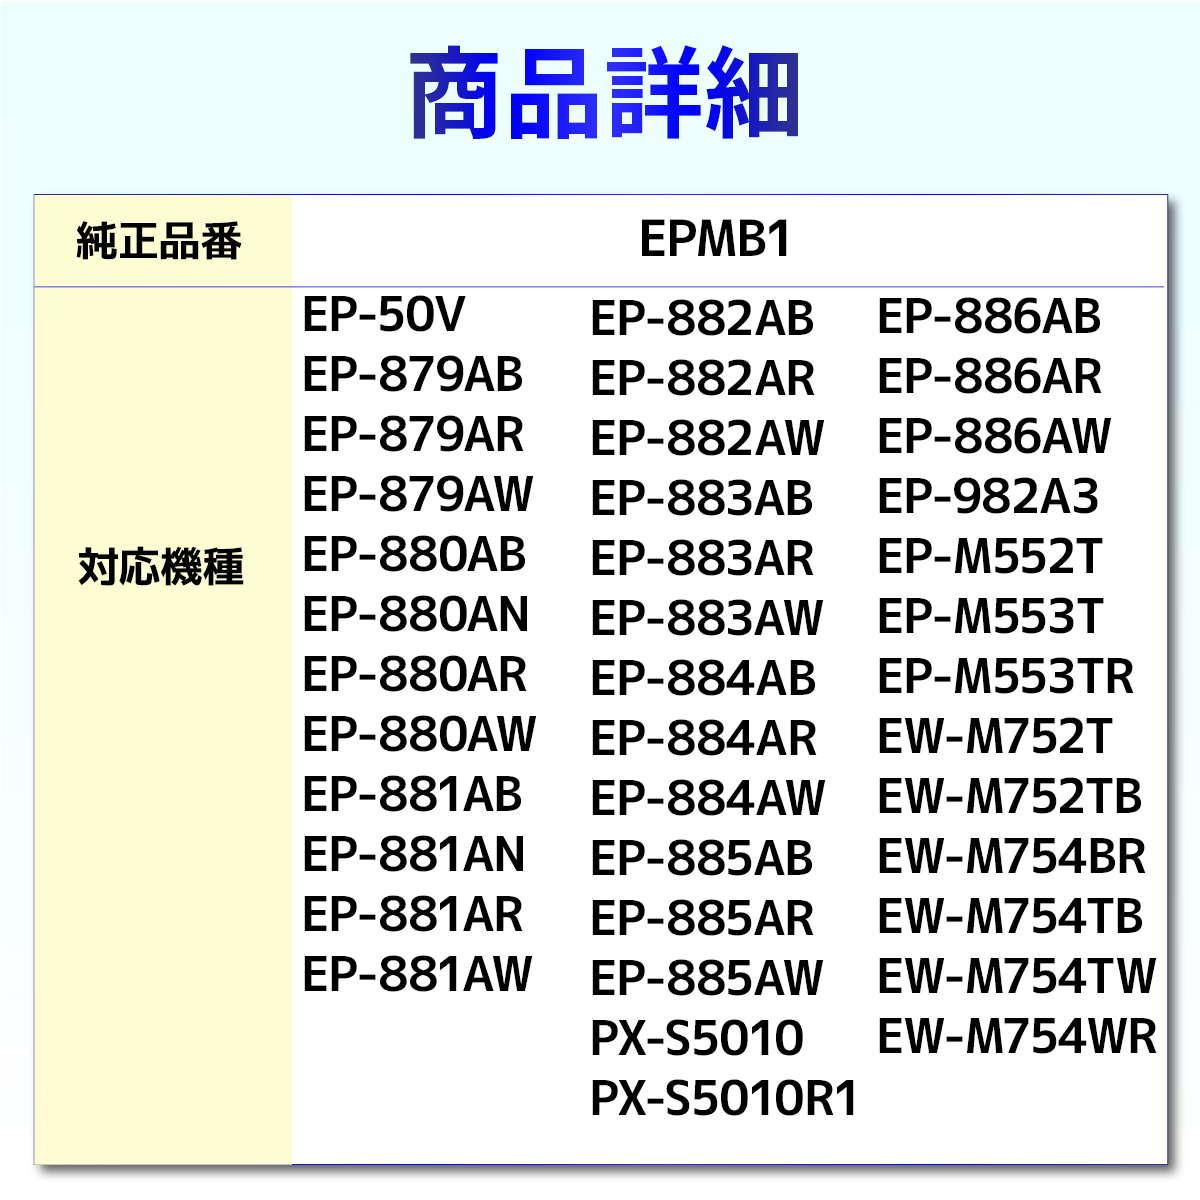 EPMB1 互換メンテナンスボックス １個　EP-50V 879AB 879 880 881 882 883 982A3 M552T M553T EW-M752T M752TB PX-S5010 EPSON